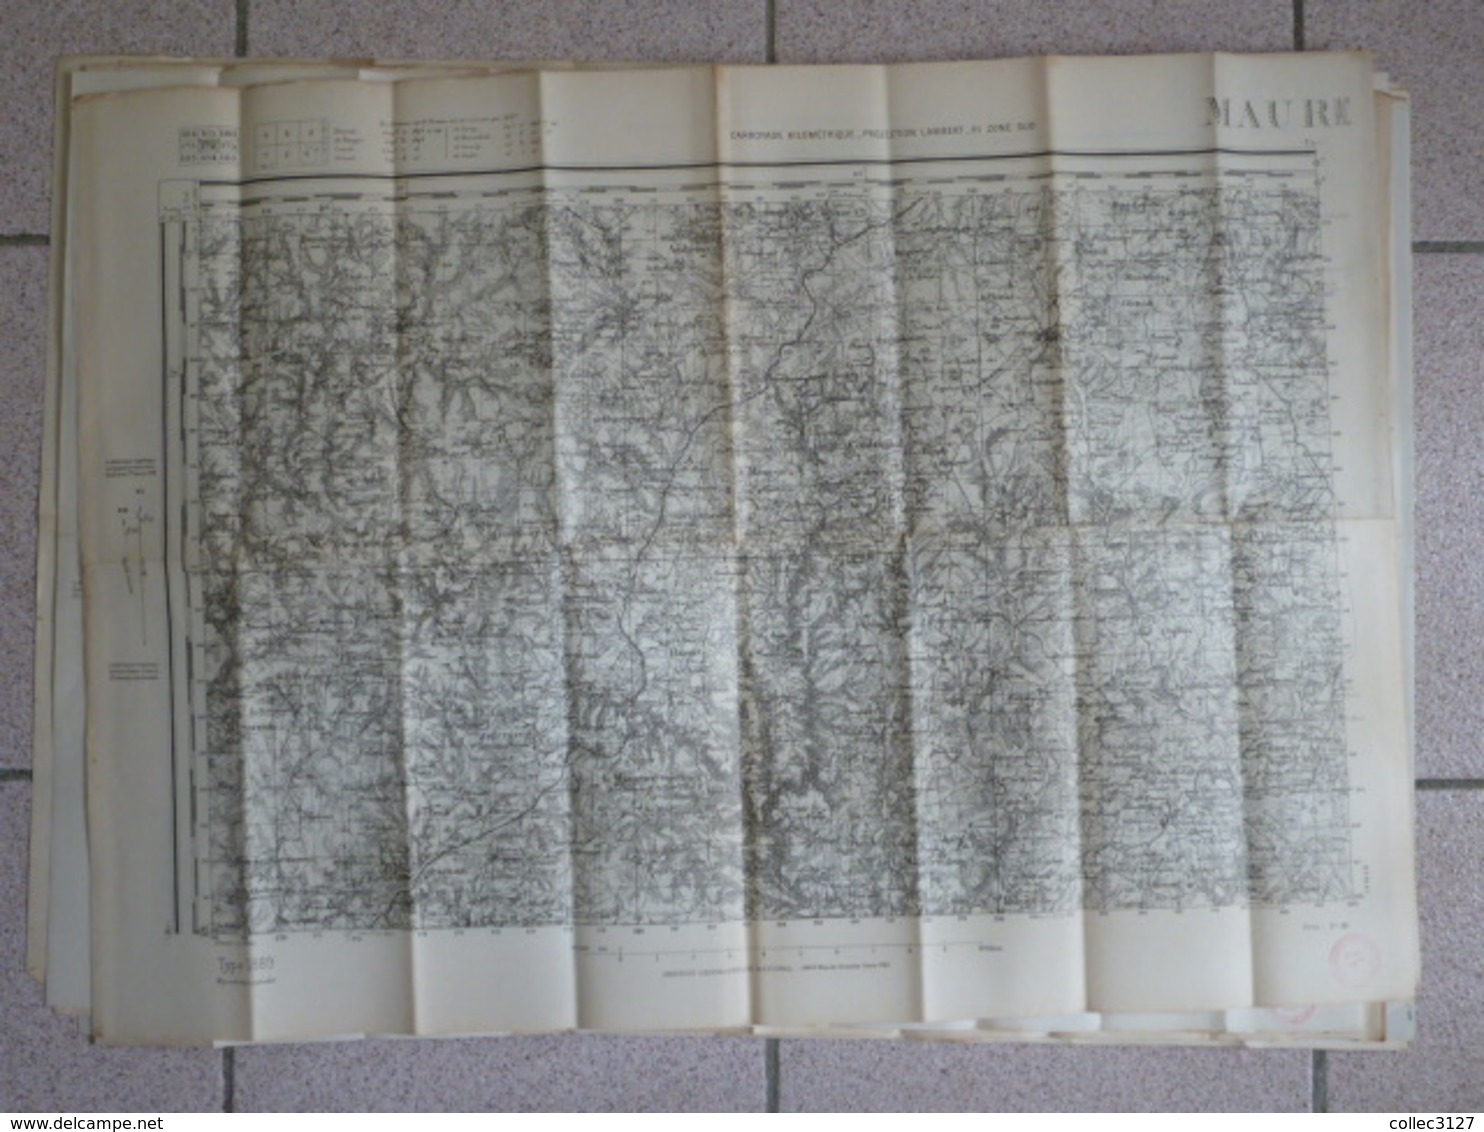 Lot De 16 Cartes D'Etat Major Type 1889 -  75*54cm Environ - Carte Geographique